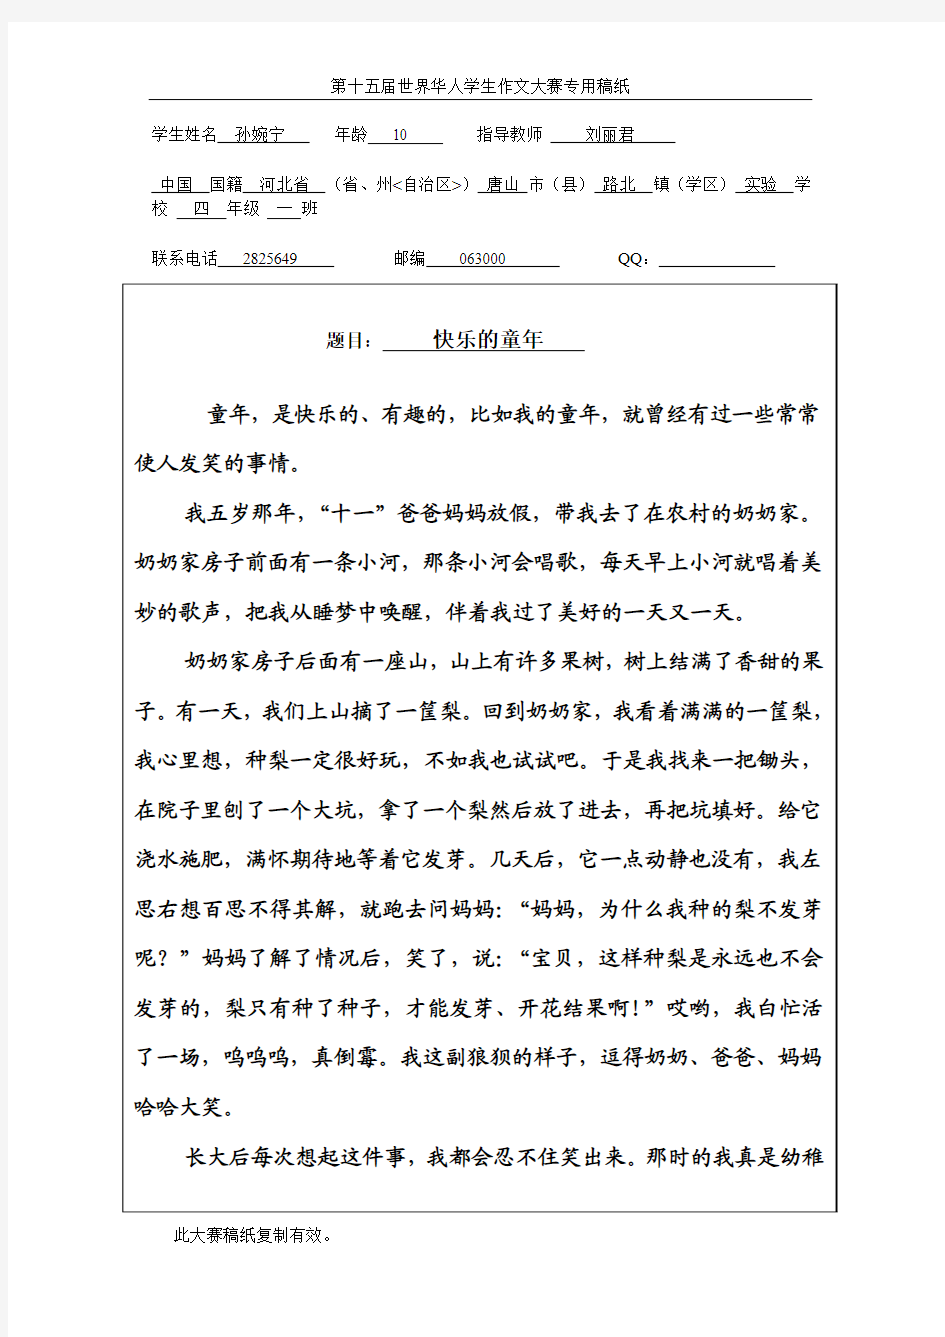 孙婉宁第十五届世界华人学生作文大赛专用稿纸